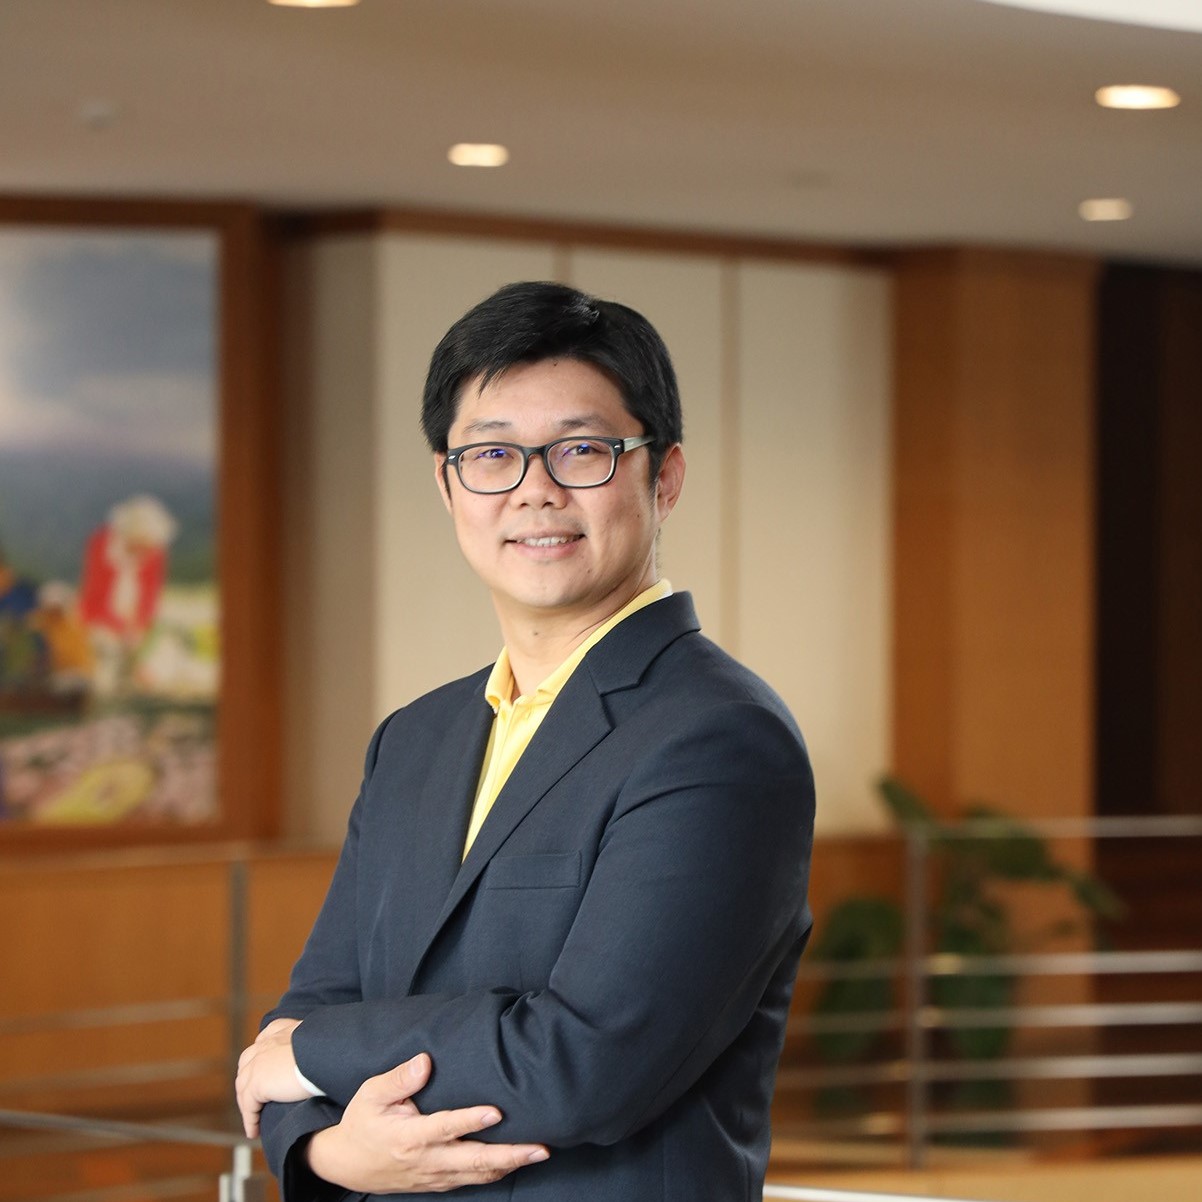 ผศ.ดร.ปเนต มโนมัยวิบูลย์ หัวหน้าศูนย์วิจัยระบบเศรษฐกิจหมุนเวียนเพื่อประเทศไทยปลอดขยะ 